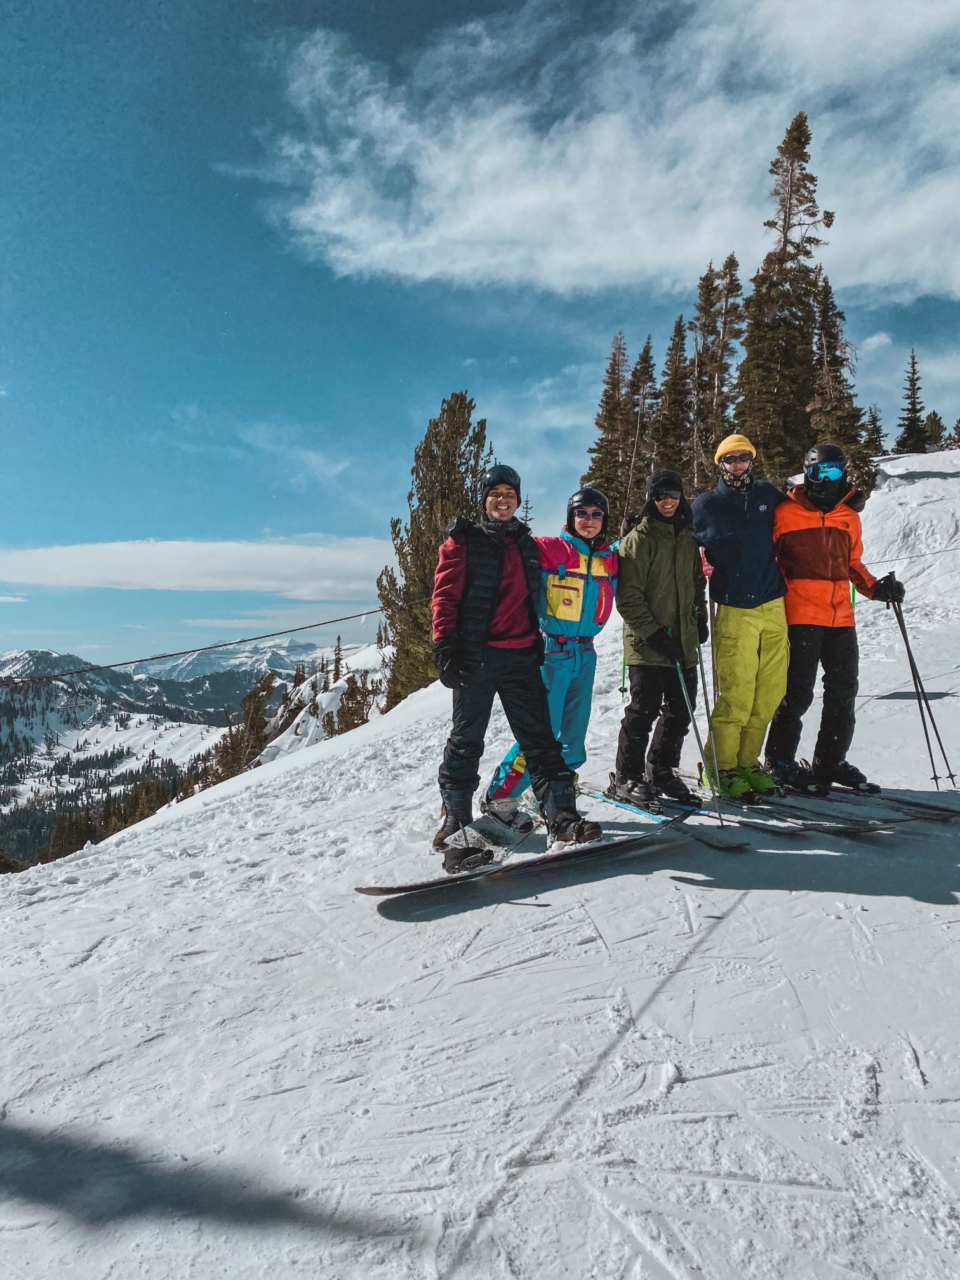 Hitting the Slopes at Las Vegas Ski and Snowboard Resort – Bearfoot Theory